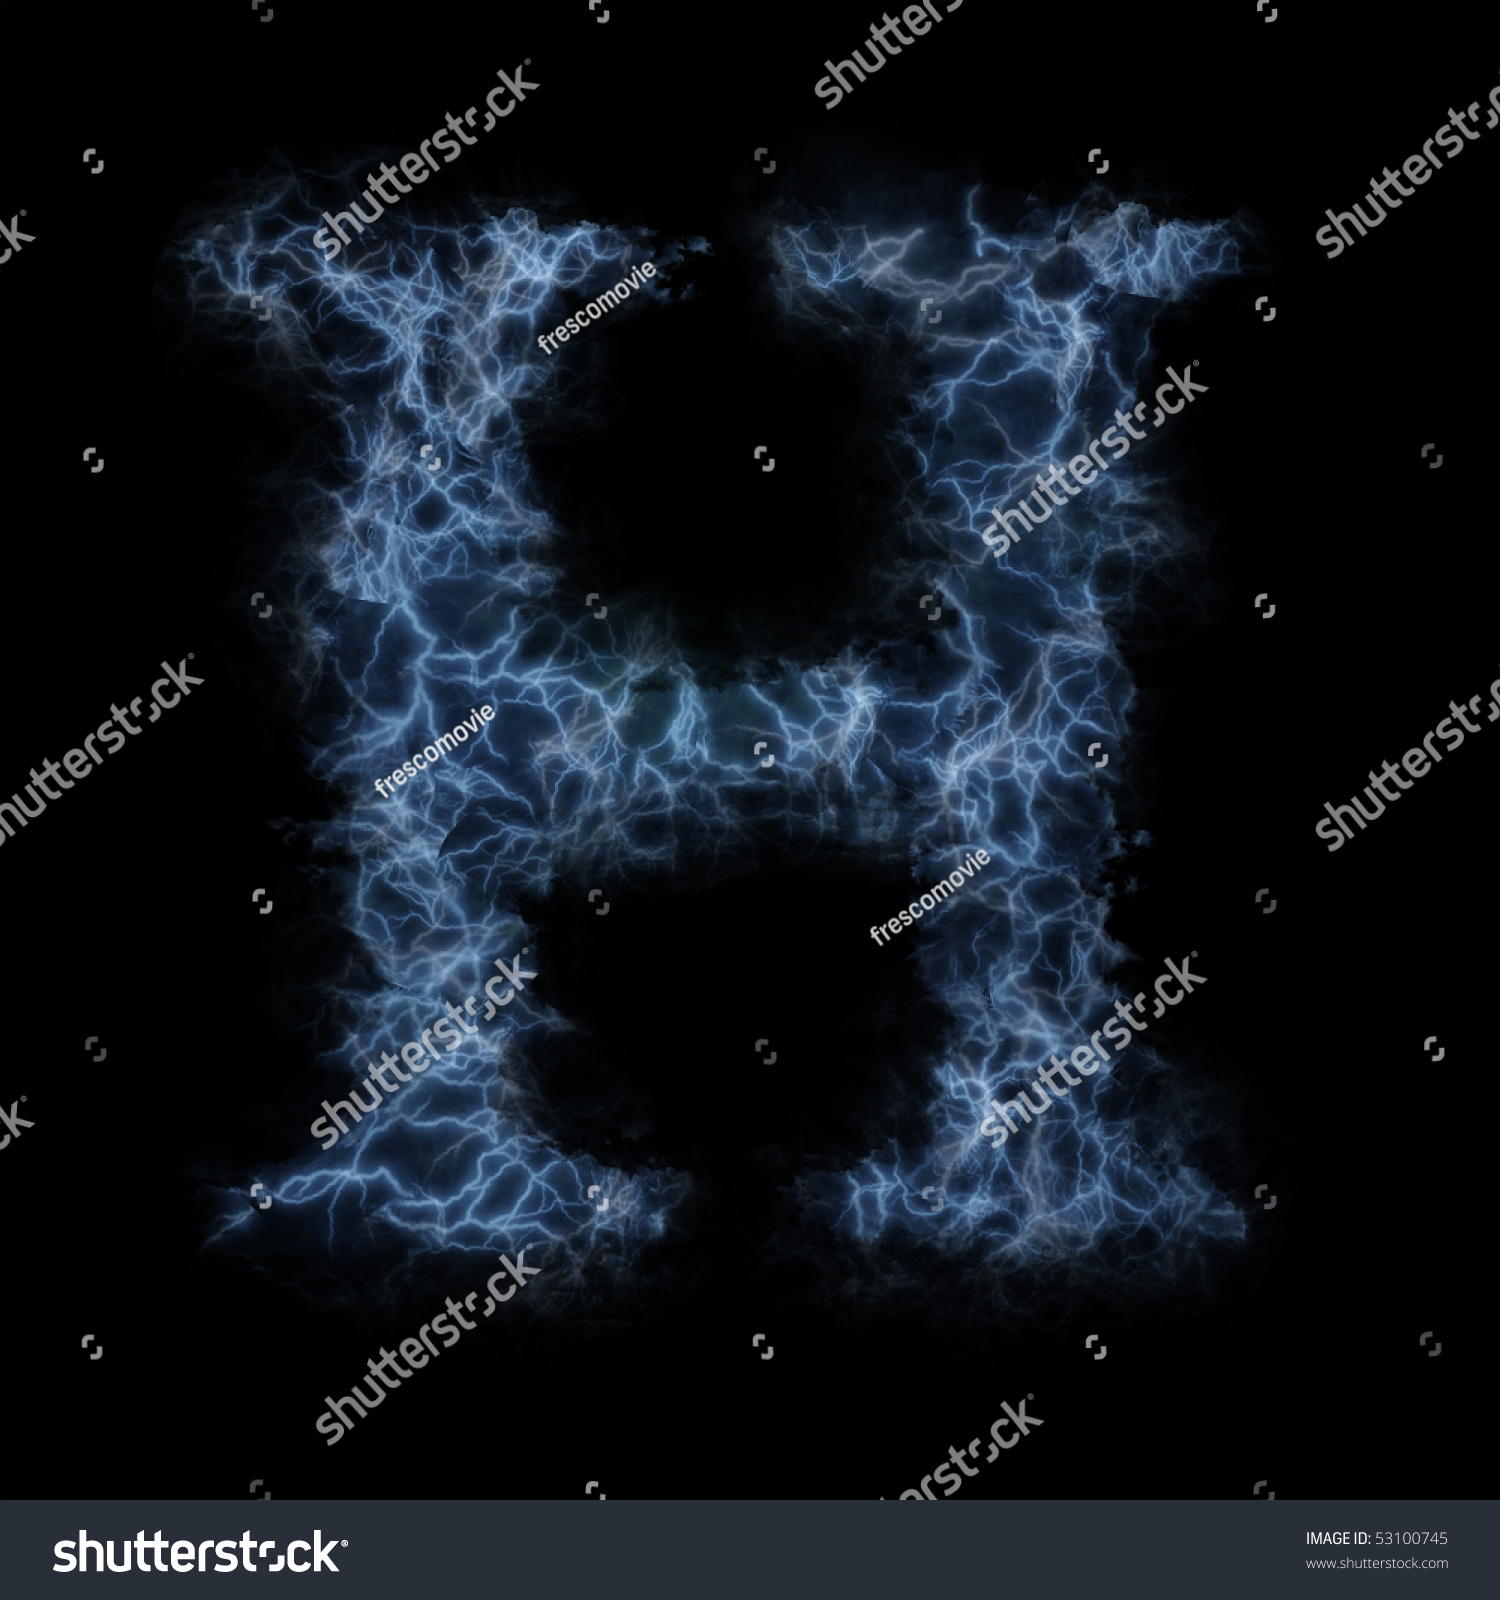 Lightning In Shape Of The Letter H Stock Photo 53100745 : Shutterstock